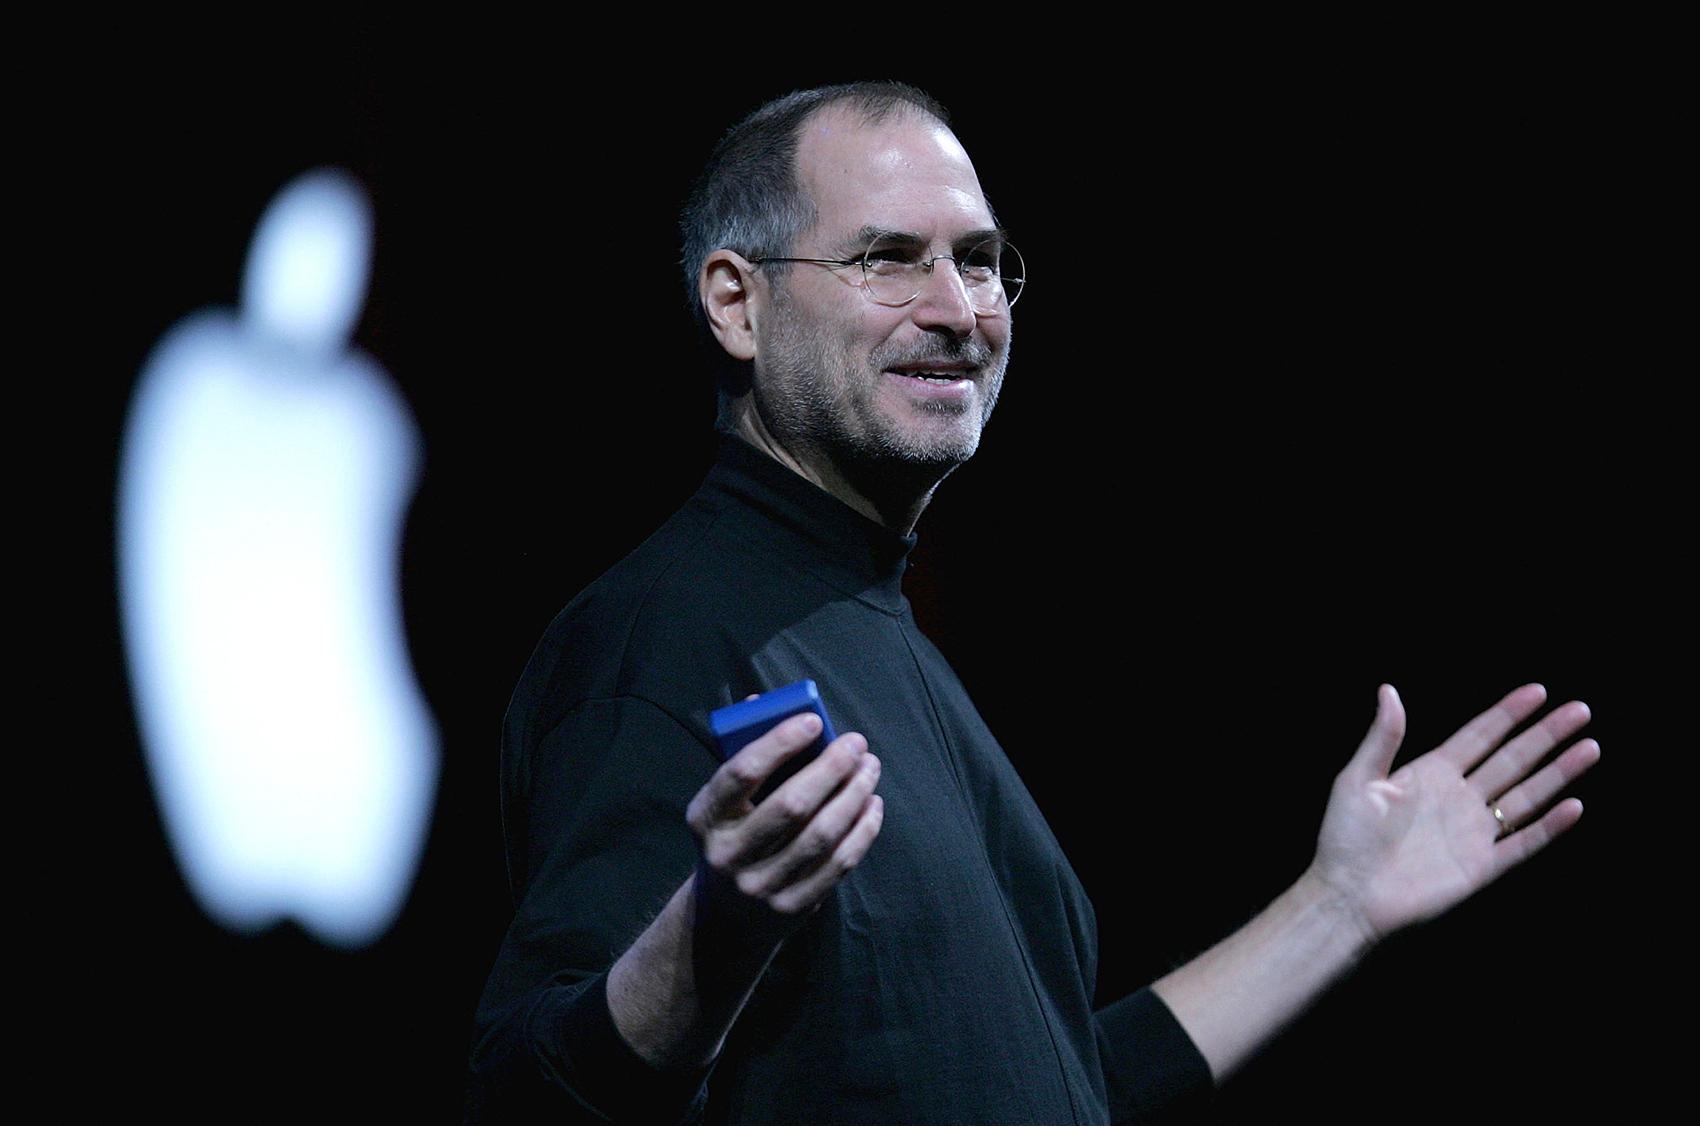 16年前,乔布斯曾称:今天,苹果将重新发明手机……